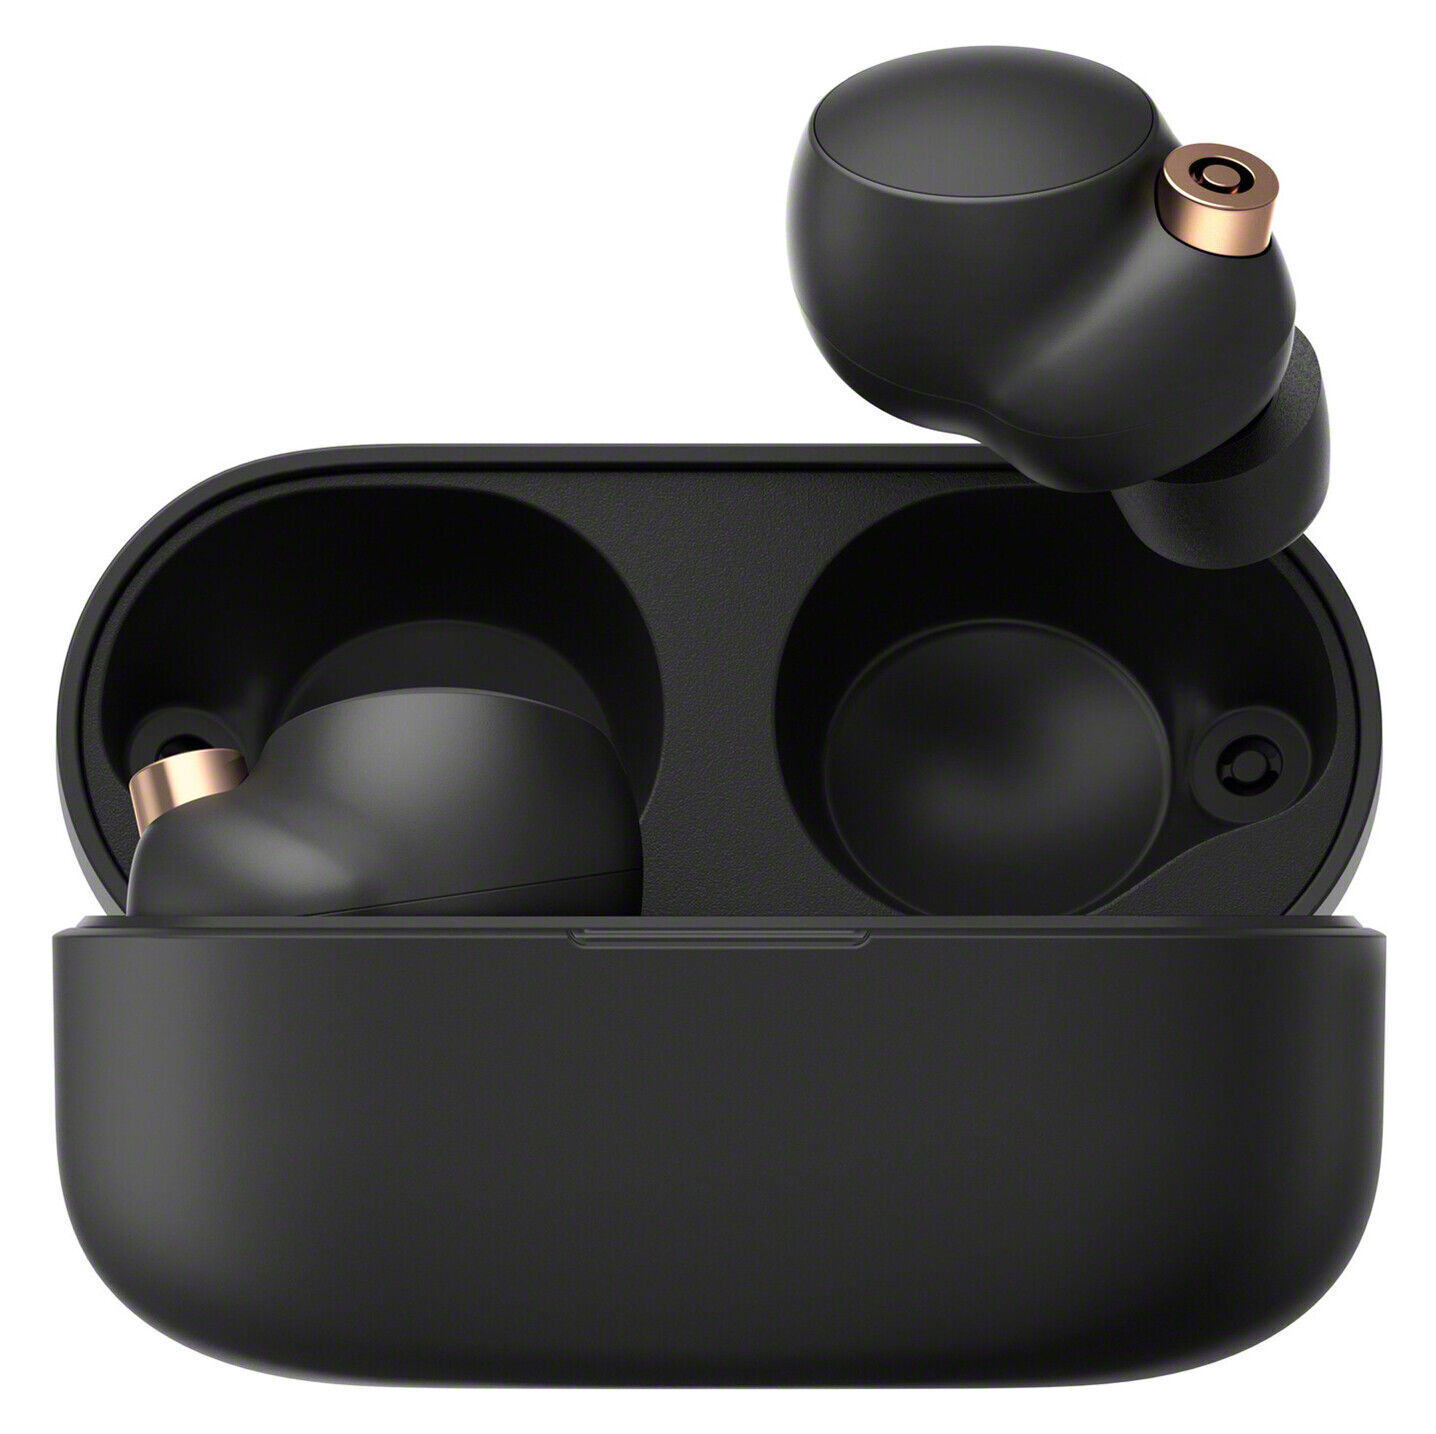 Sony+WF-1000XM4+Wireless+In-Ear+Headset+-+Black for sale online | eBay